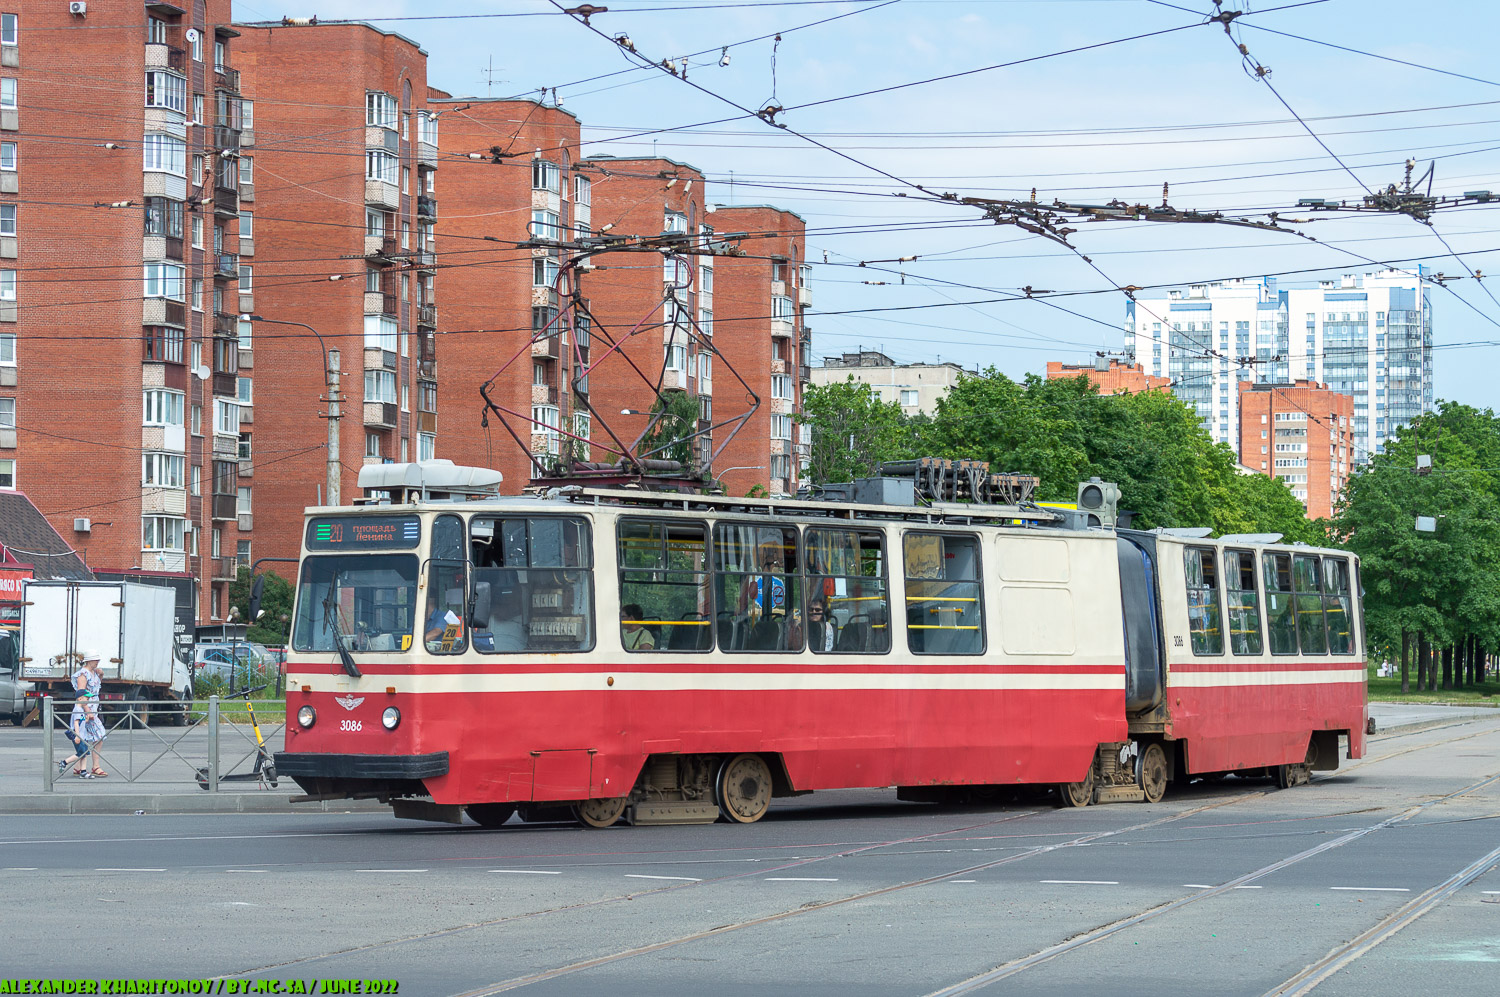 Санкт-Петербург, ЛВС-86К № 3086